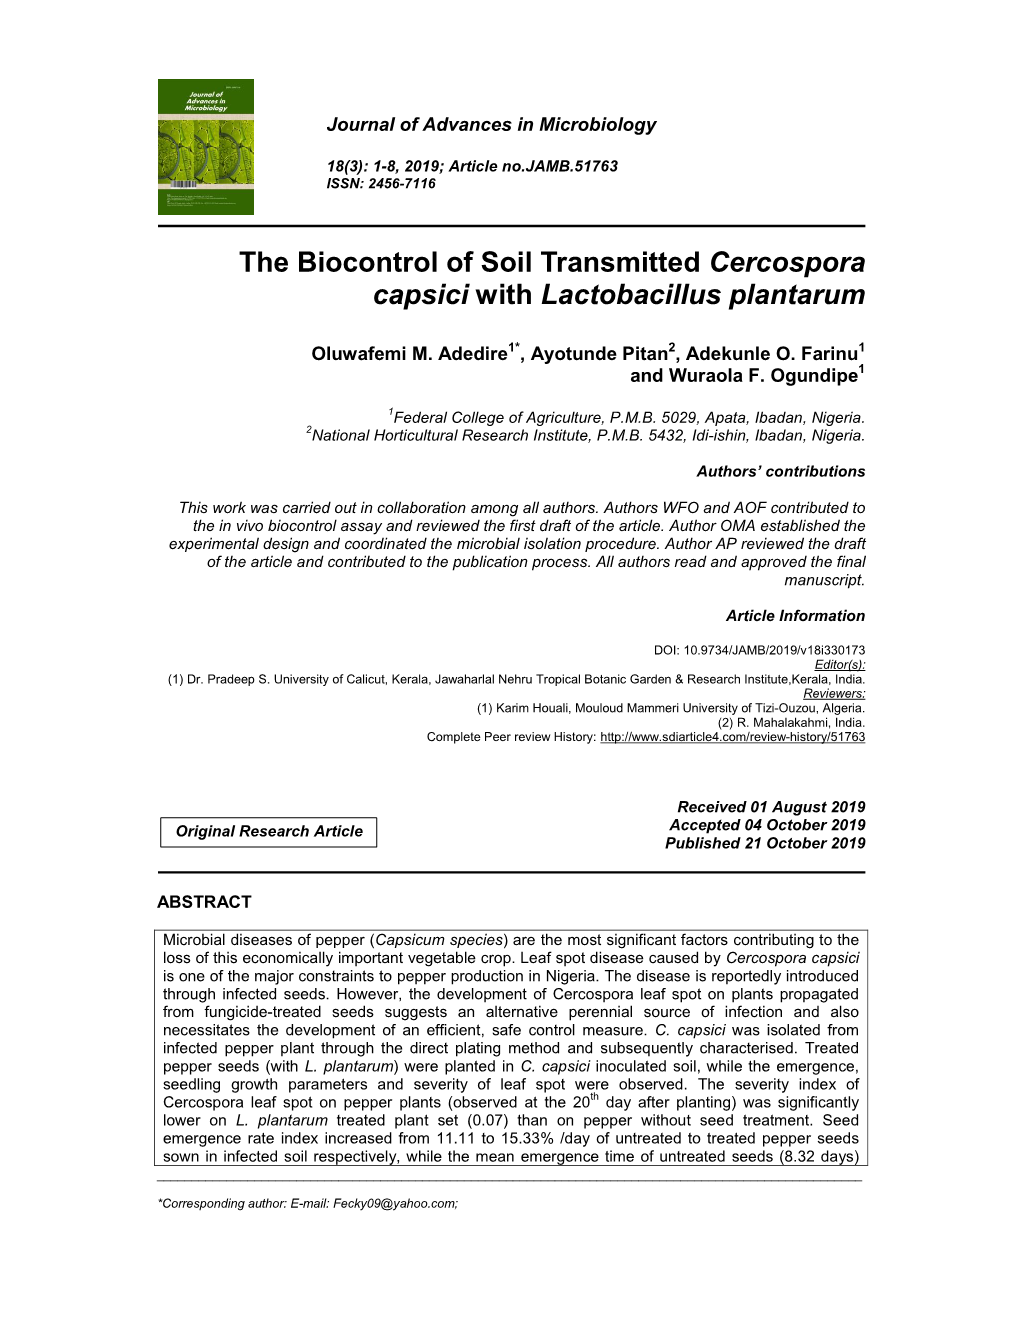 The Biocontrol of Soil Transmitted Cercospora Capsici with Lactobacillus Plantarum